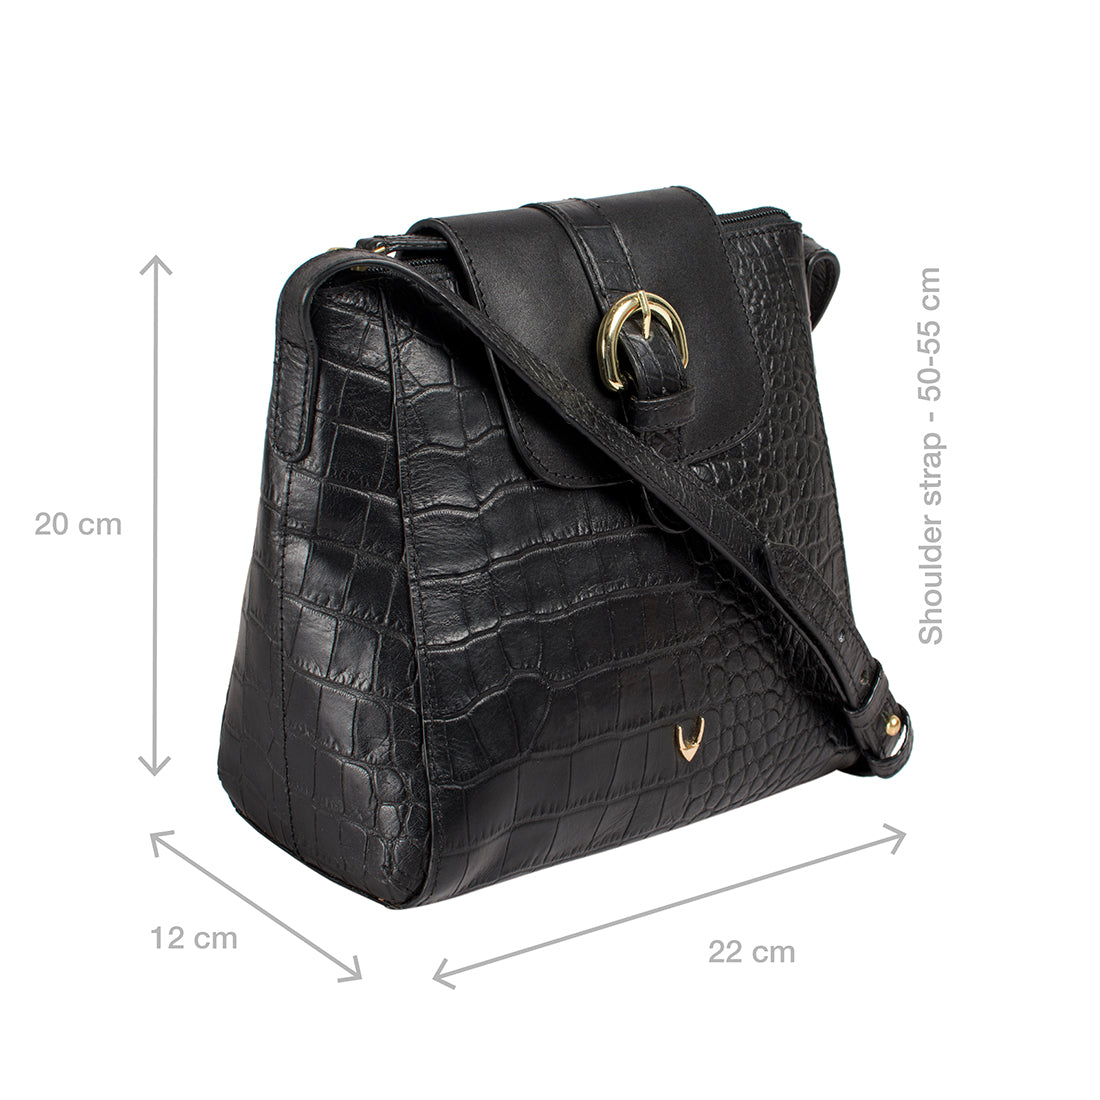 Buy Marsala Sonoma 01 Tote Bag Online - Hidesign